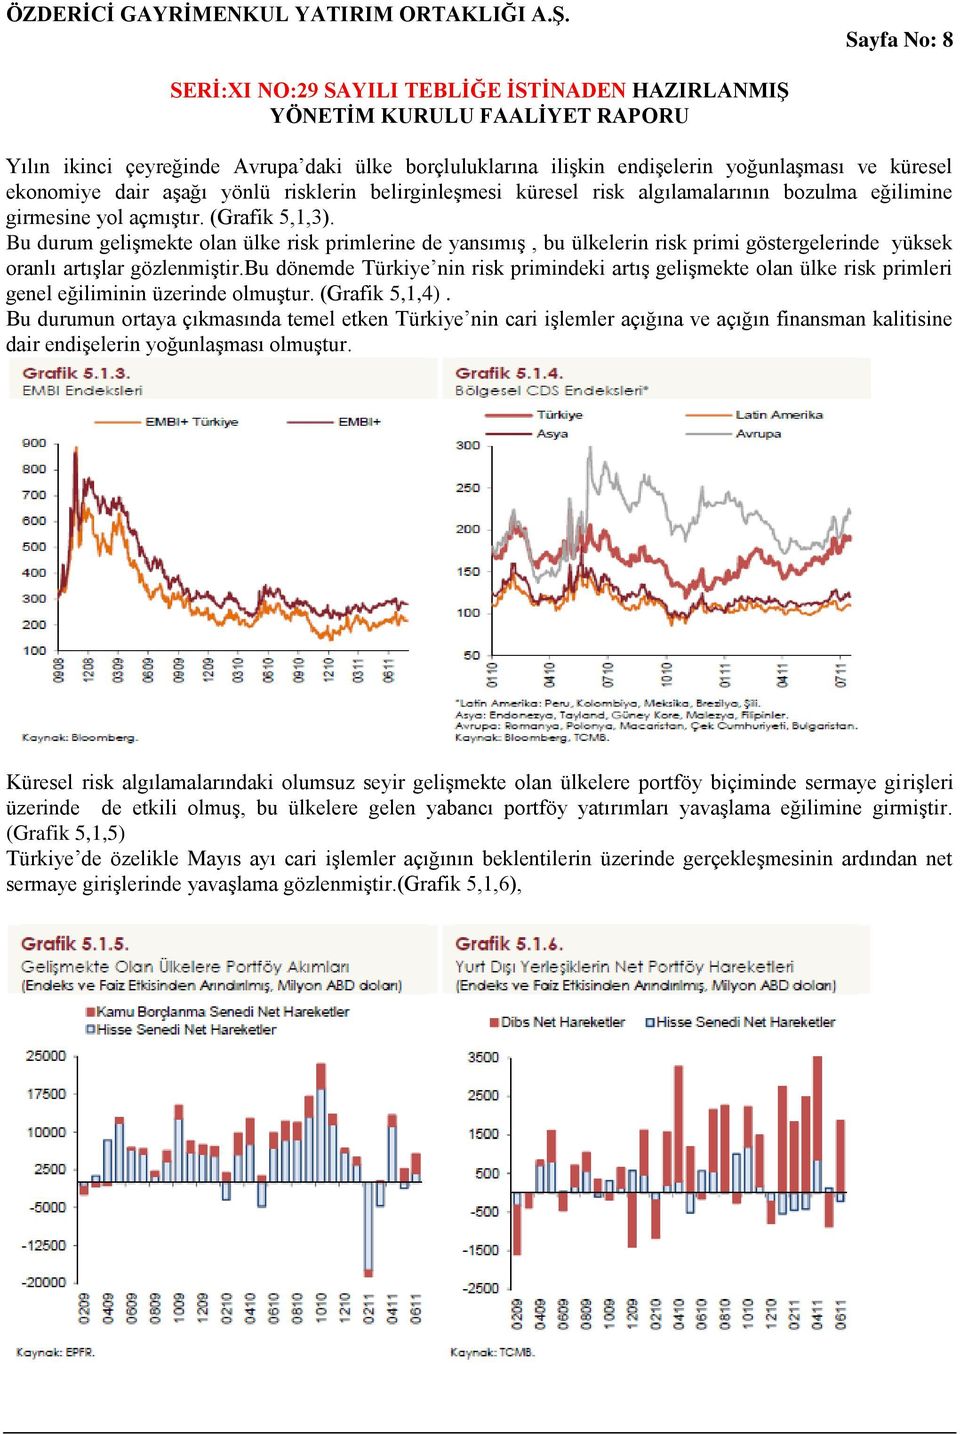 bu dönemde Türkiye nin risk primindeki artış gelişmekte olan ülke risk primleri genel eğiliminin üzerinde olmuştur. (Grafik 5,1,4).